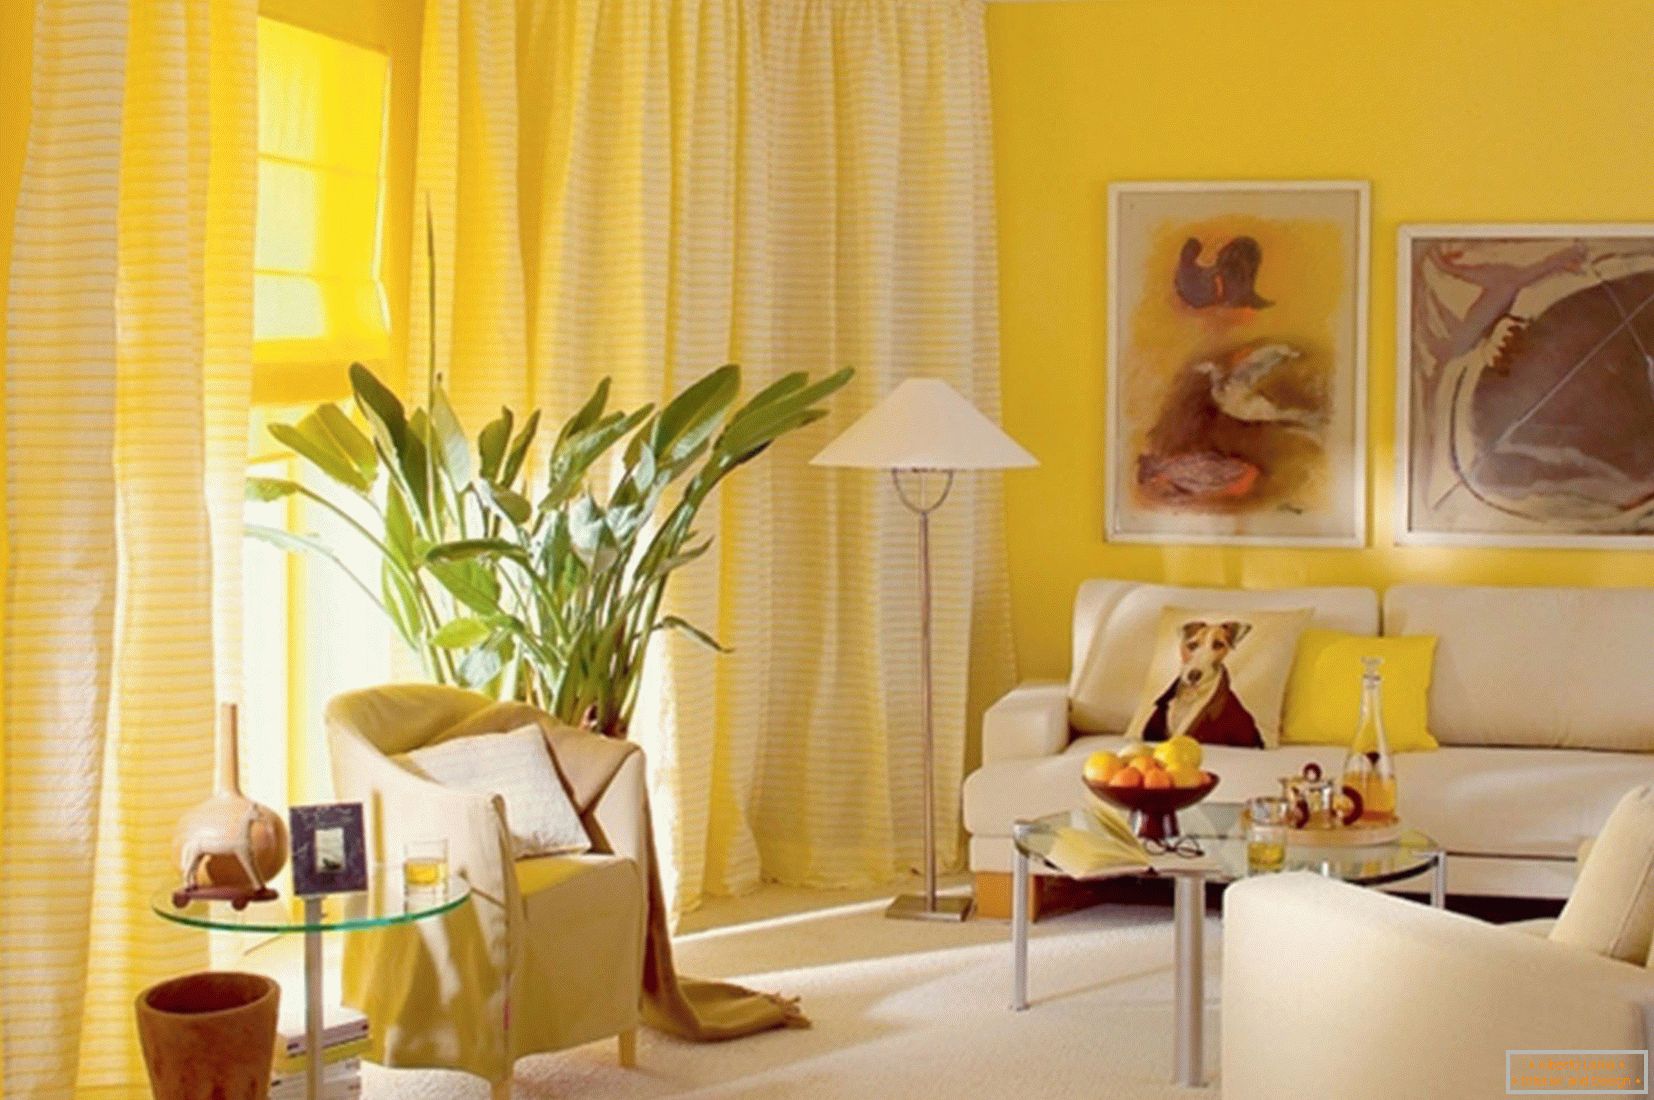 Sončna dnevna soba je rumena